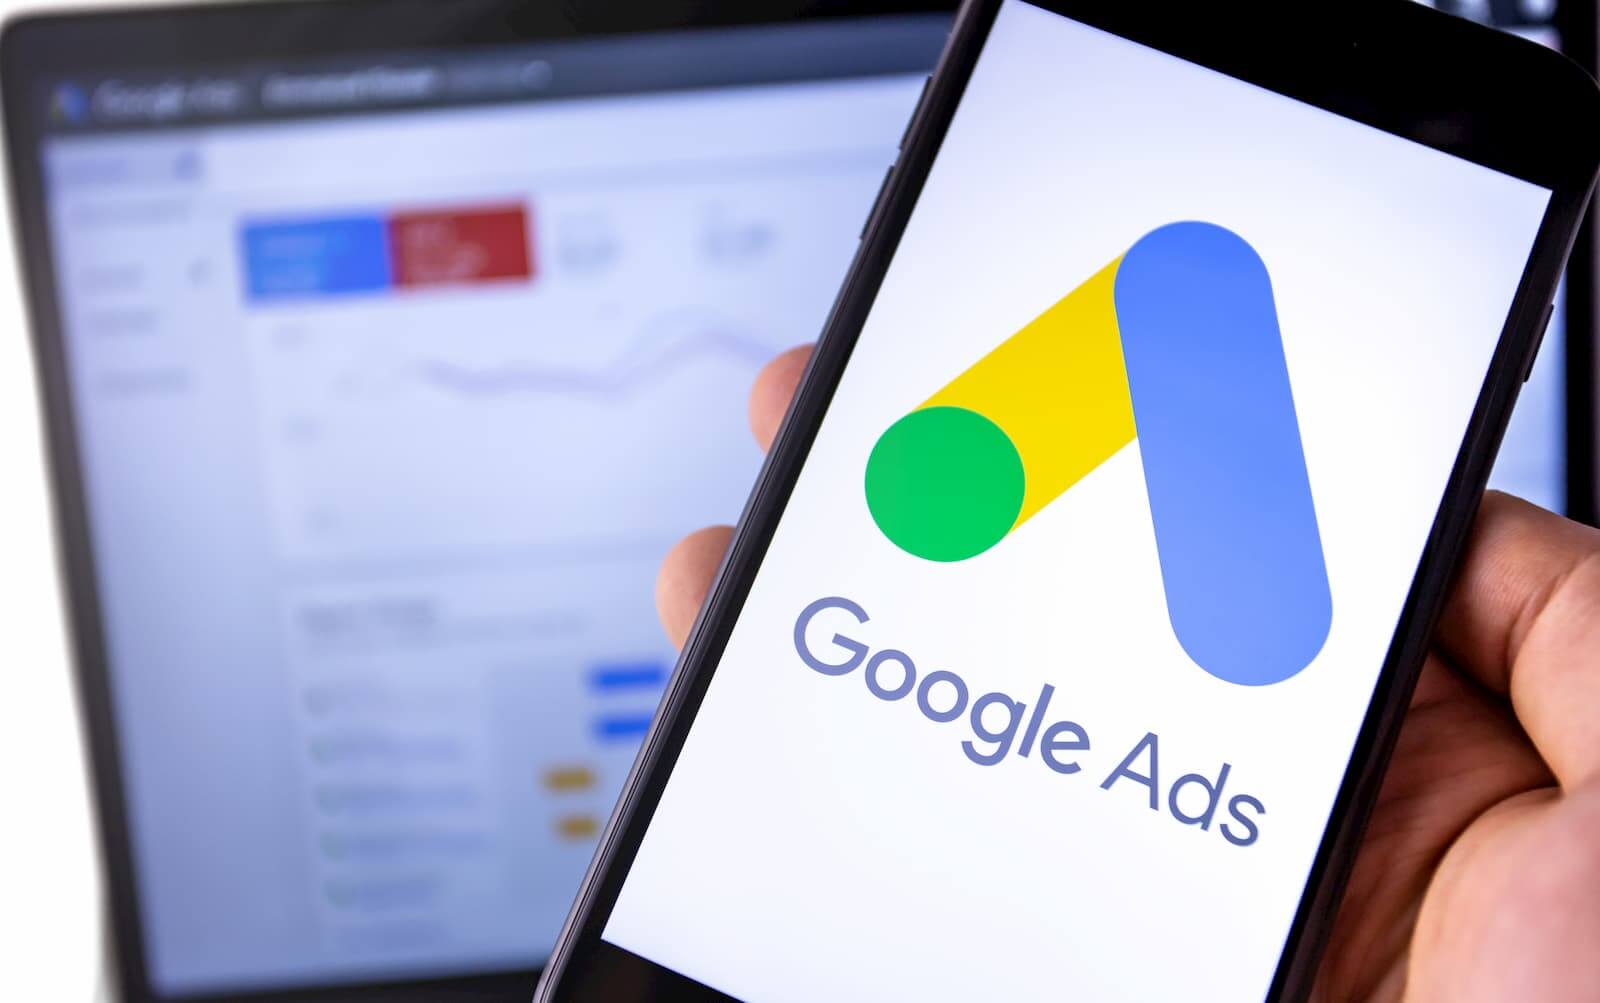 Google Ads Para Afiliados #2: Criando a Campanha